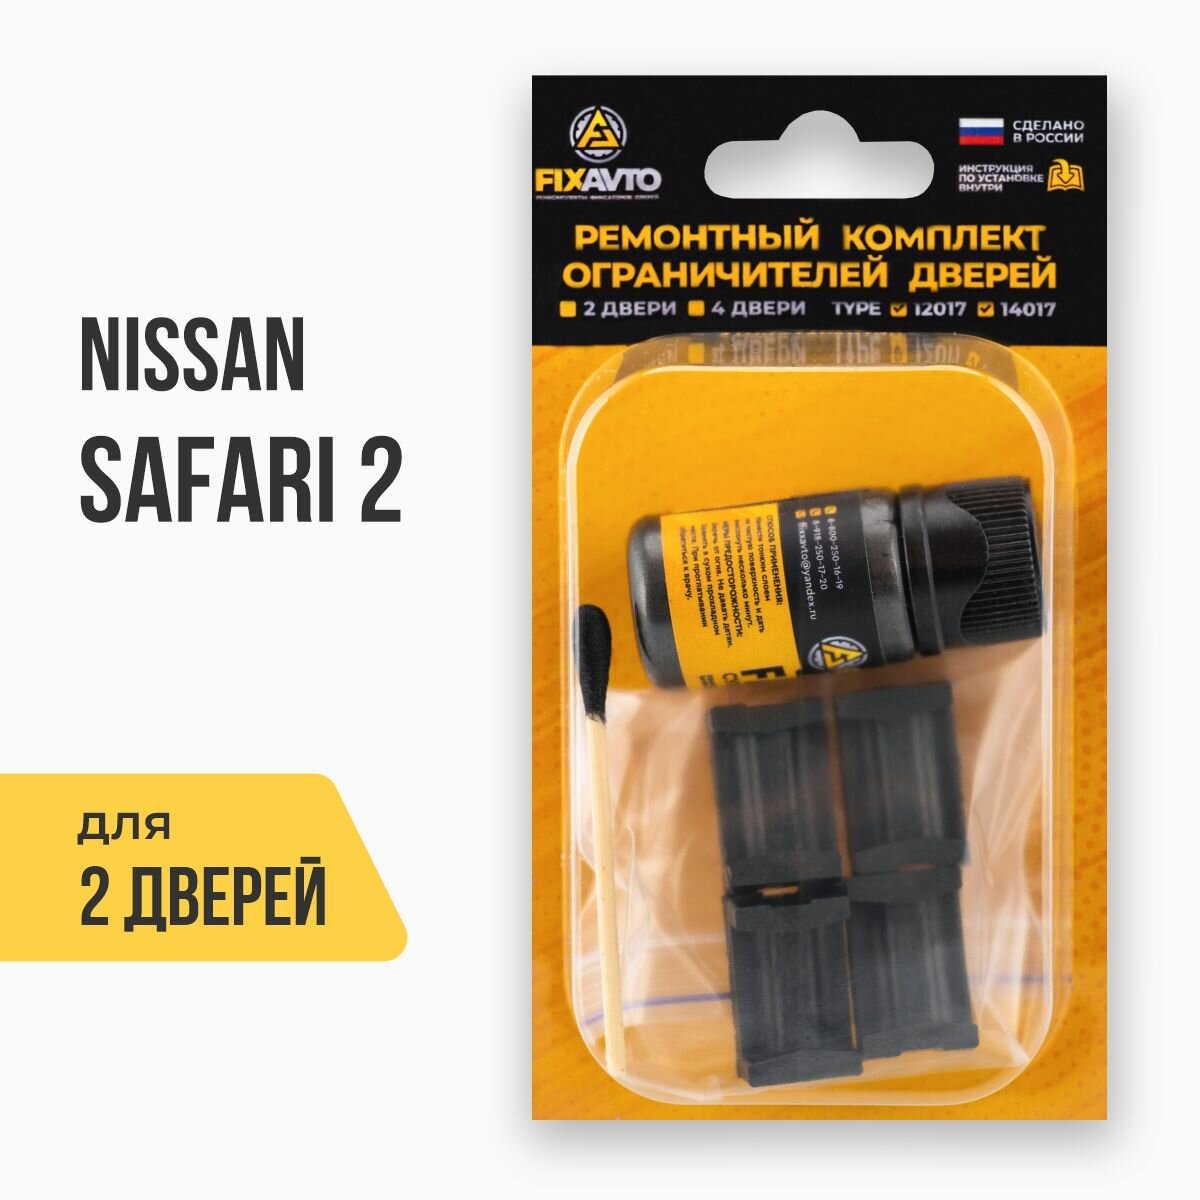 Ремкомплект ограничителей на 2 двери Nissan SAFARI II 2 поколения, Кузов: Y61, Г. в: 1997-2007 TYPE 12017 Тип 17